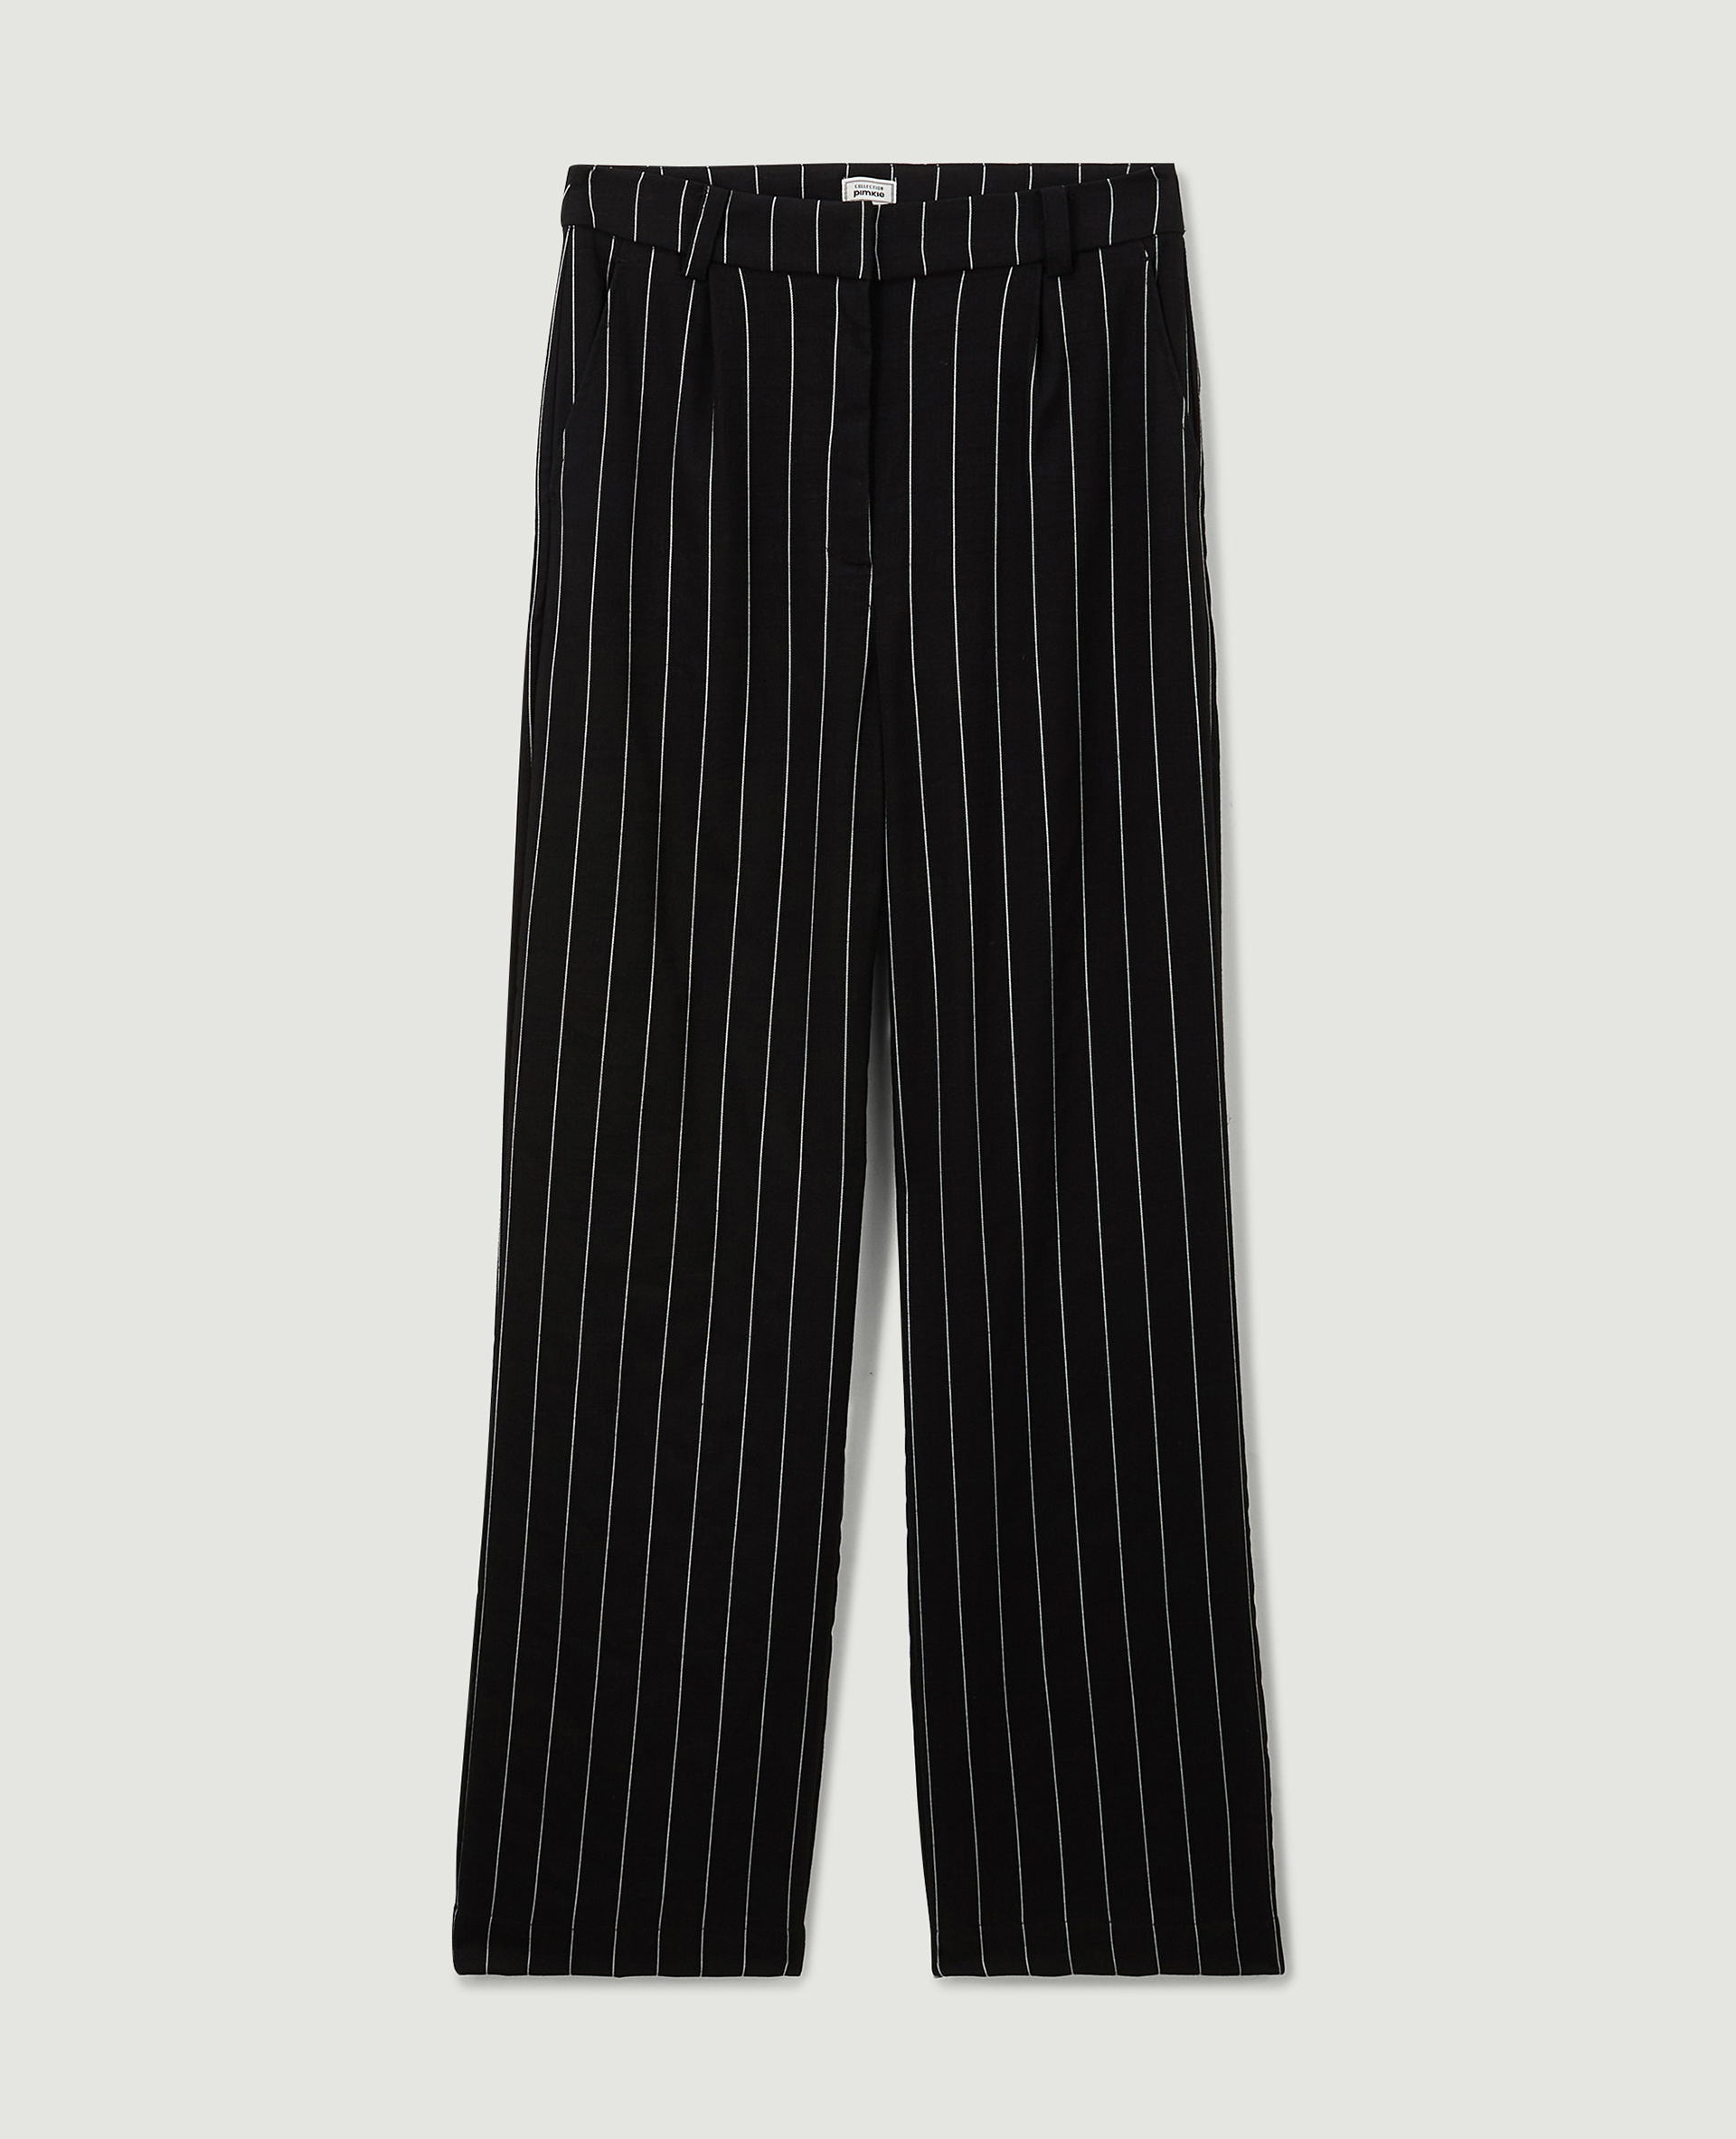 Pantalon droit et large effet lin noir - Pimkie